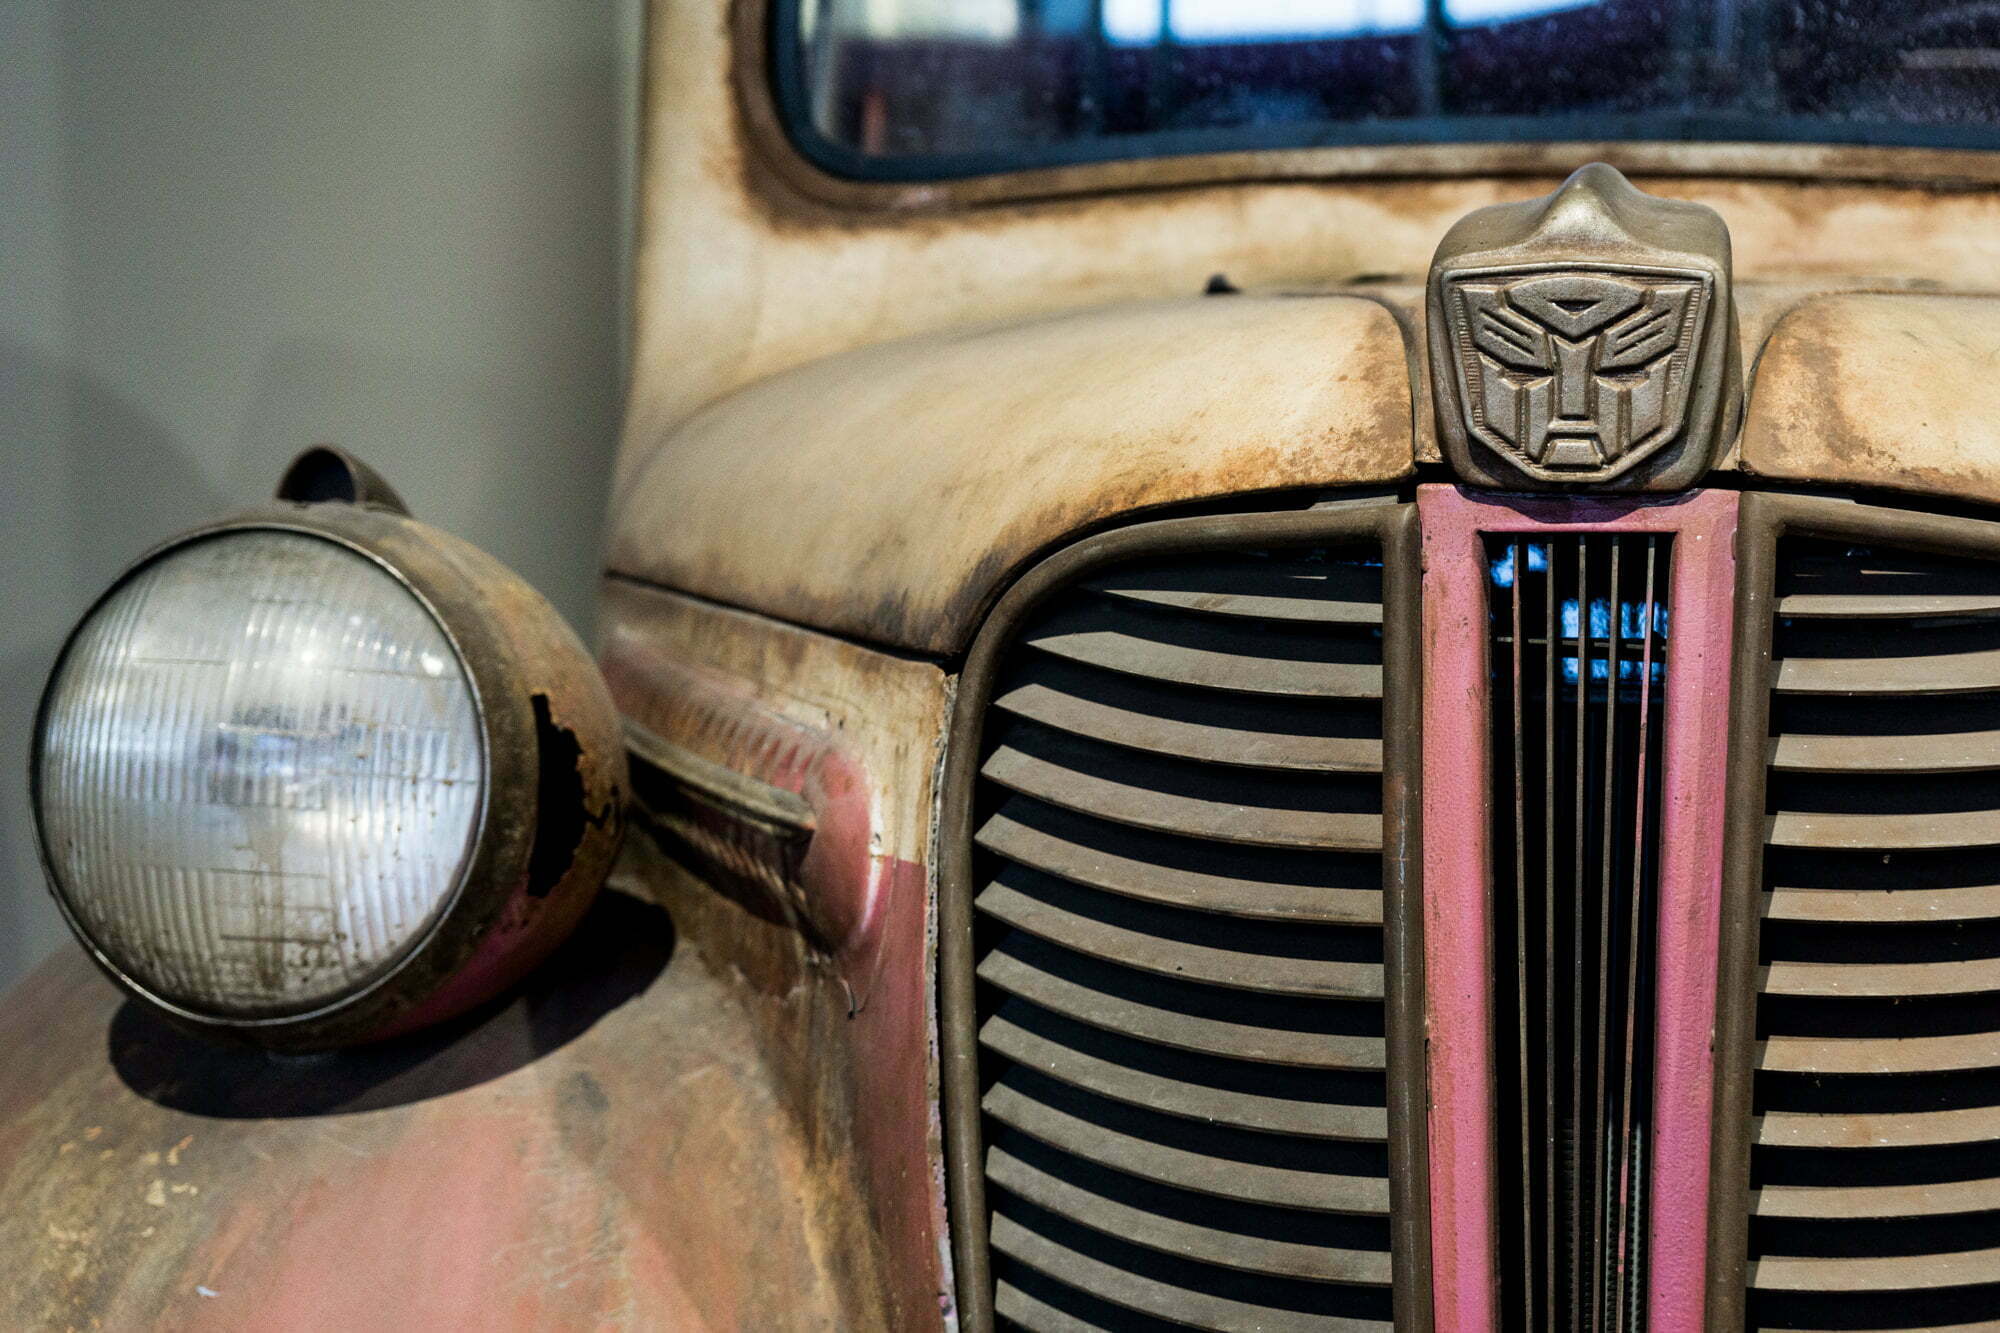 Autobot, Ice Cream Truck, Revenge of the Fallen, Transformers, Xeno III*Petersen Museum